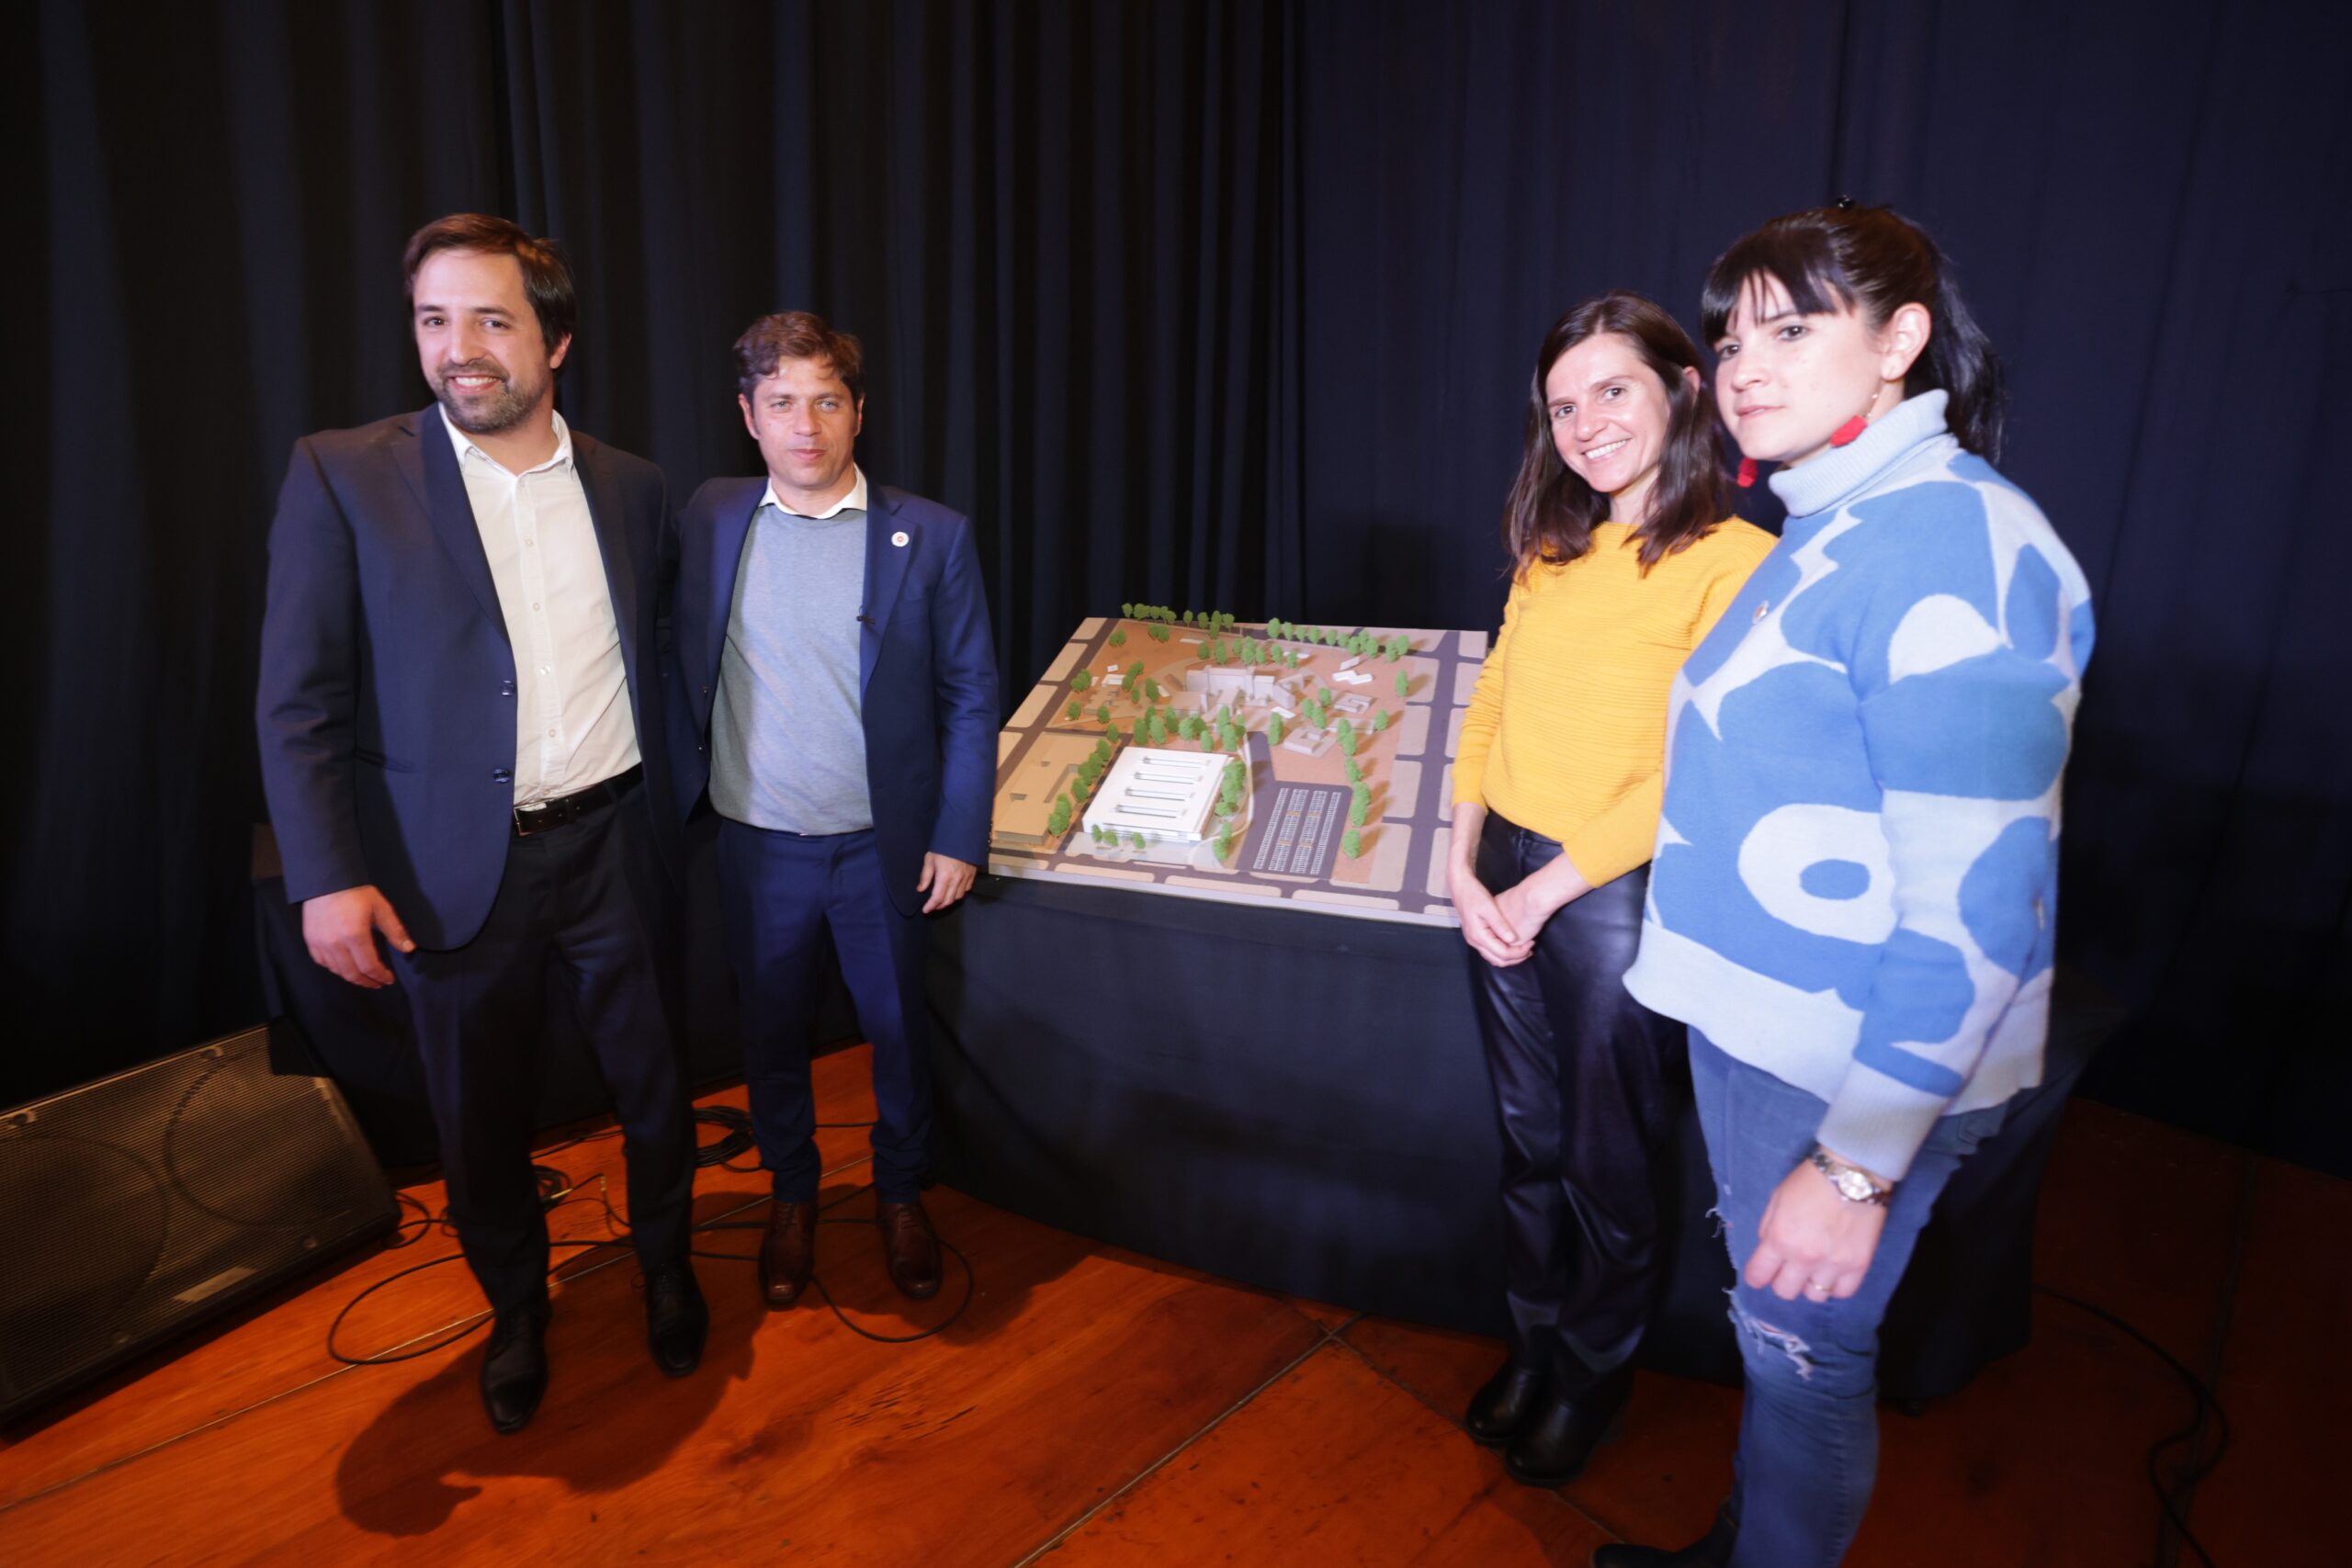 Kicillof presentó el proyecto de un Polo Sanitario Regional en Mar del Plata